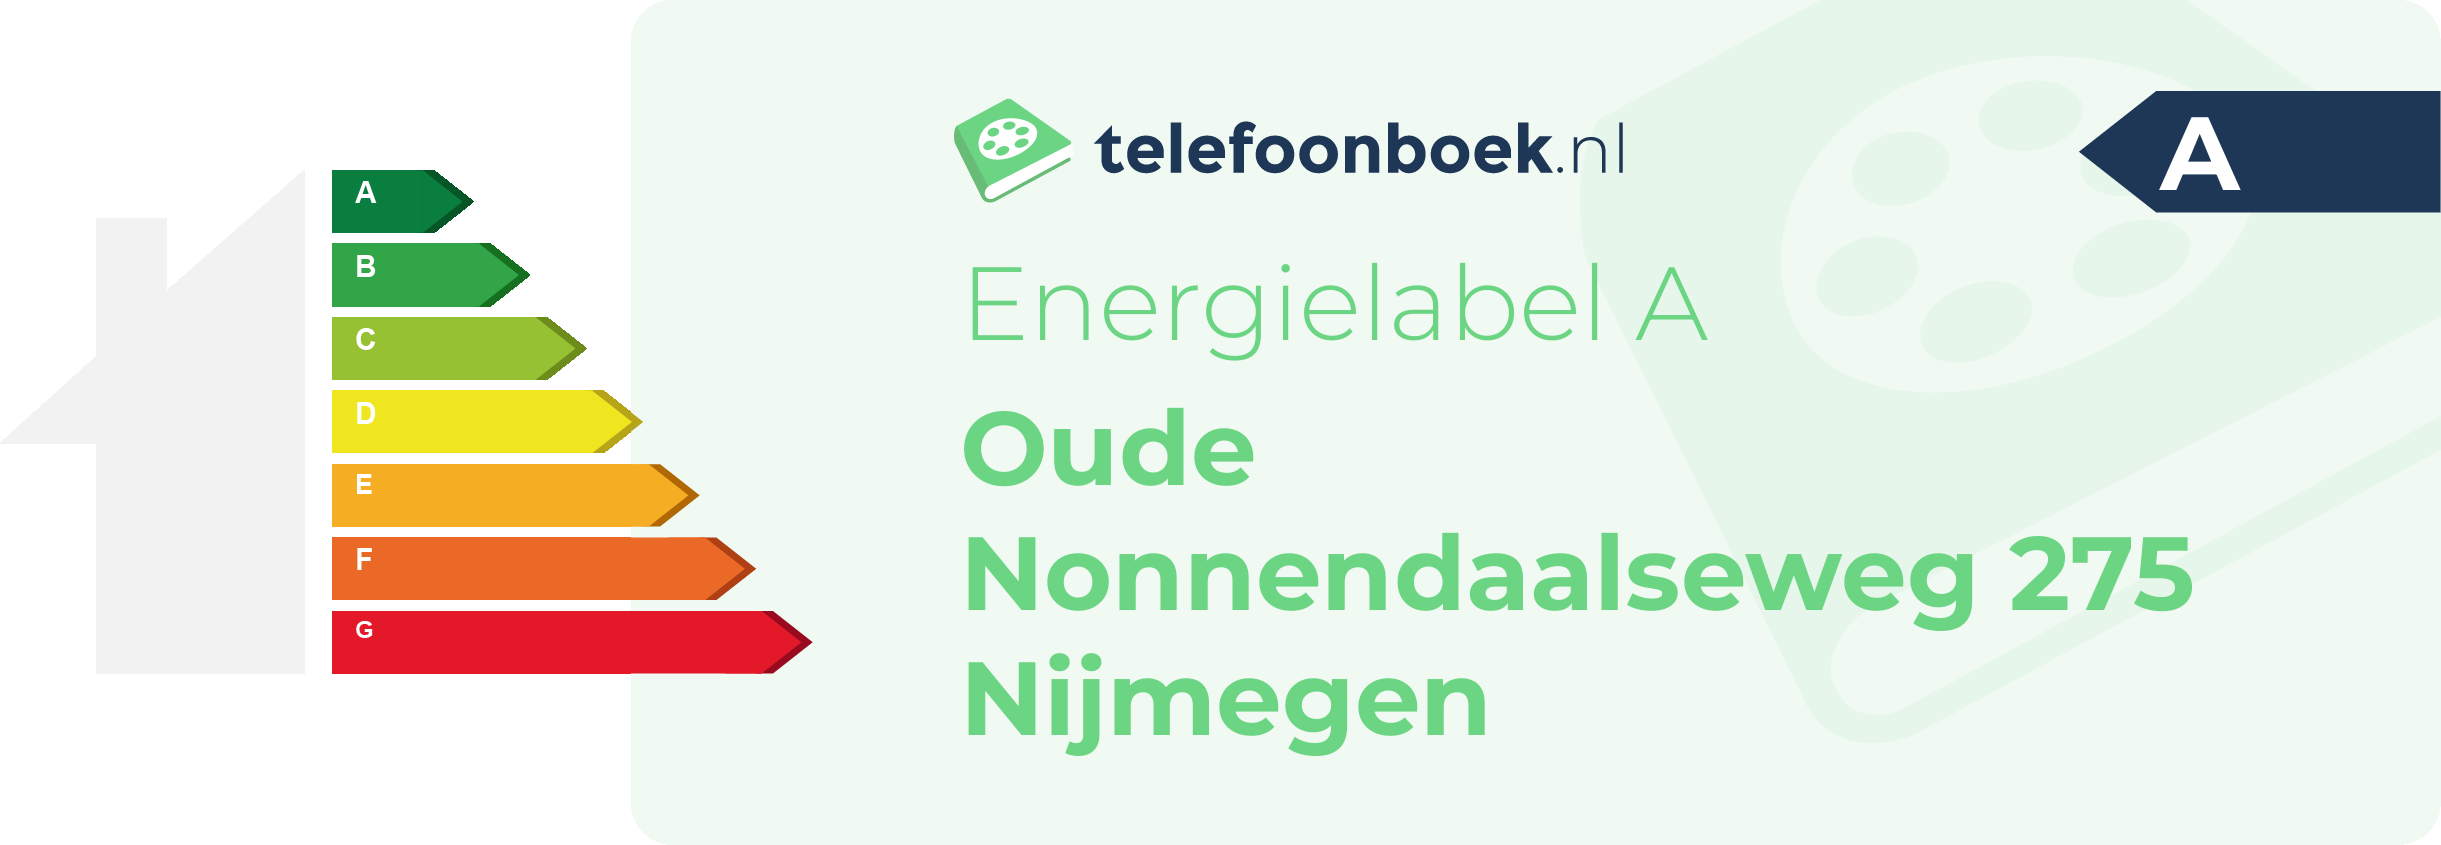 Energielabel Oude Nonnendaalseweg 275 Nijmegen